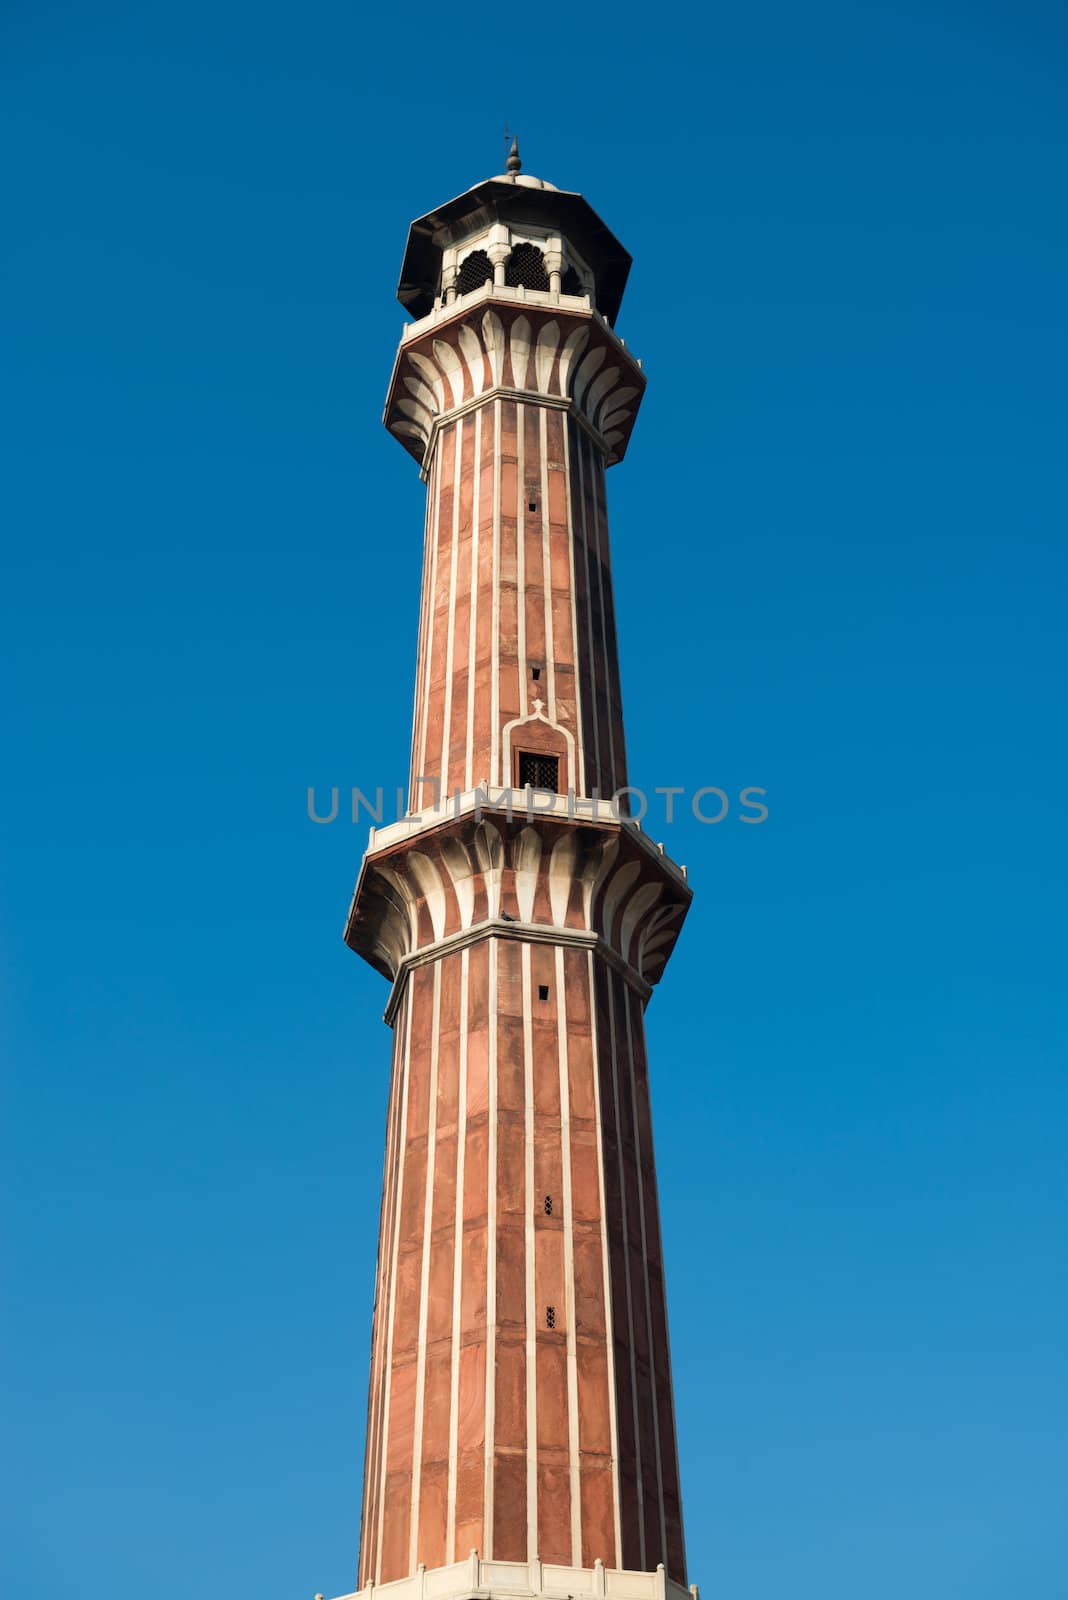 Minaret Jama Masjid Mosque, Dehli, India  by iryna_rasko